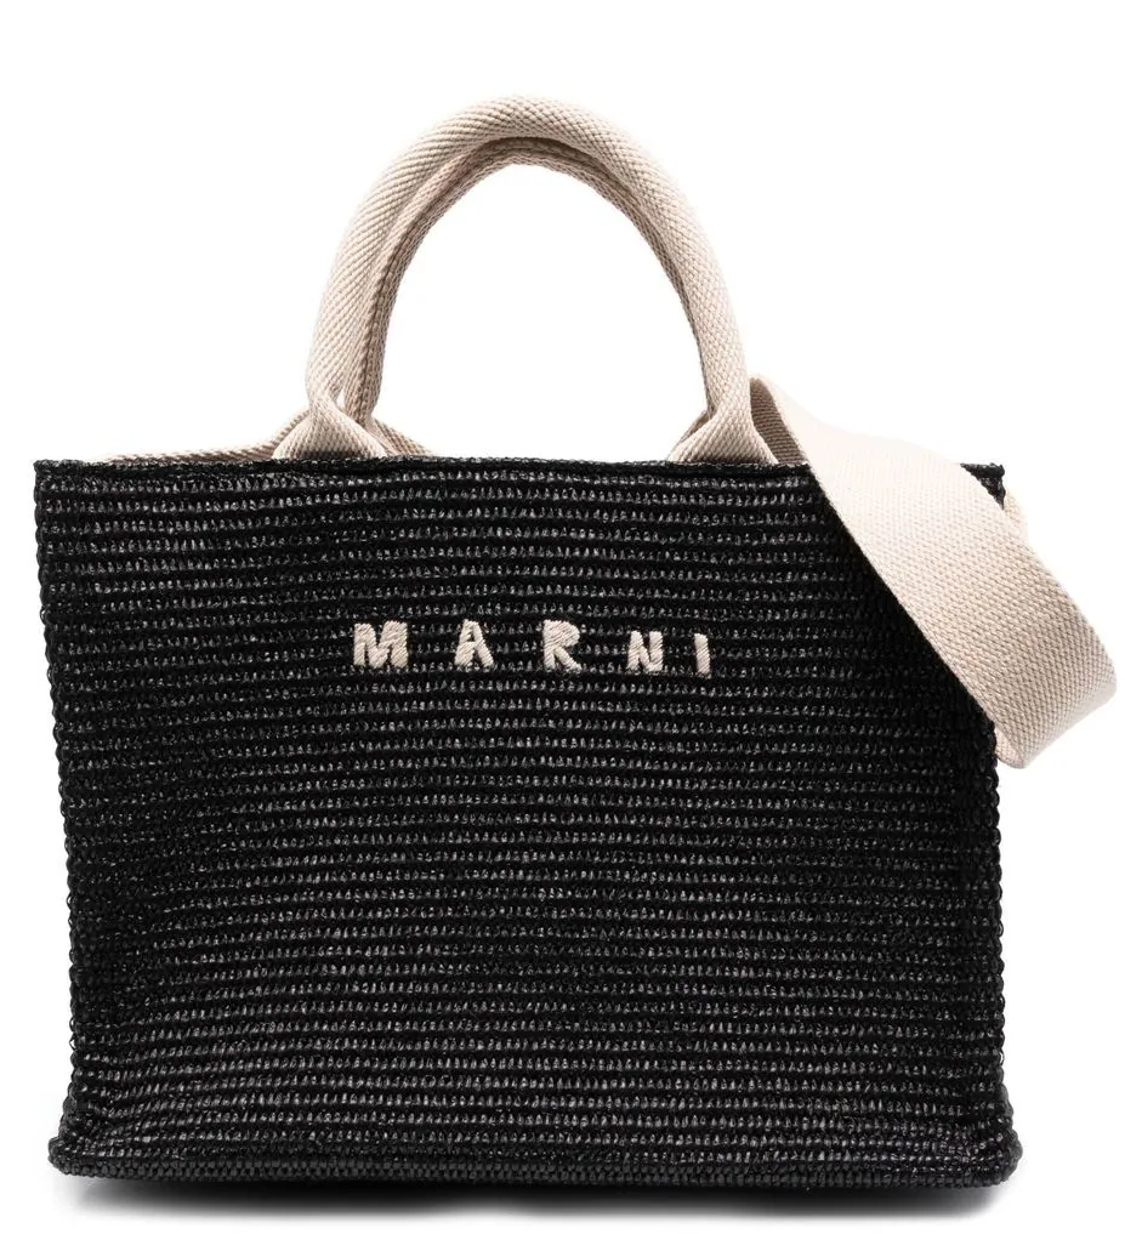 shop Marni  Borse: Borse Marni, tote bag, in rafia e pelle, con manici e tracolla regolabile, logo stampato sul davanti, tasca con zip interna. number 2697